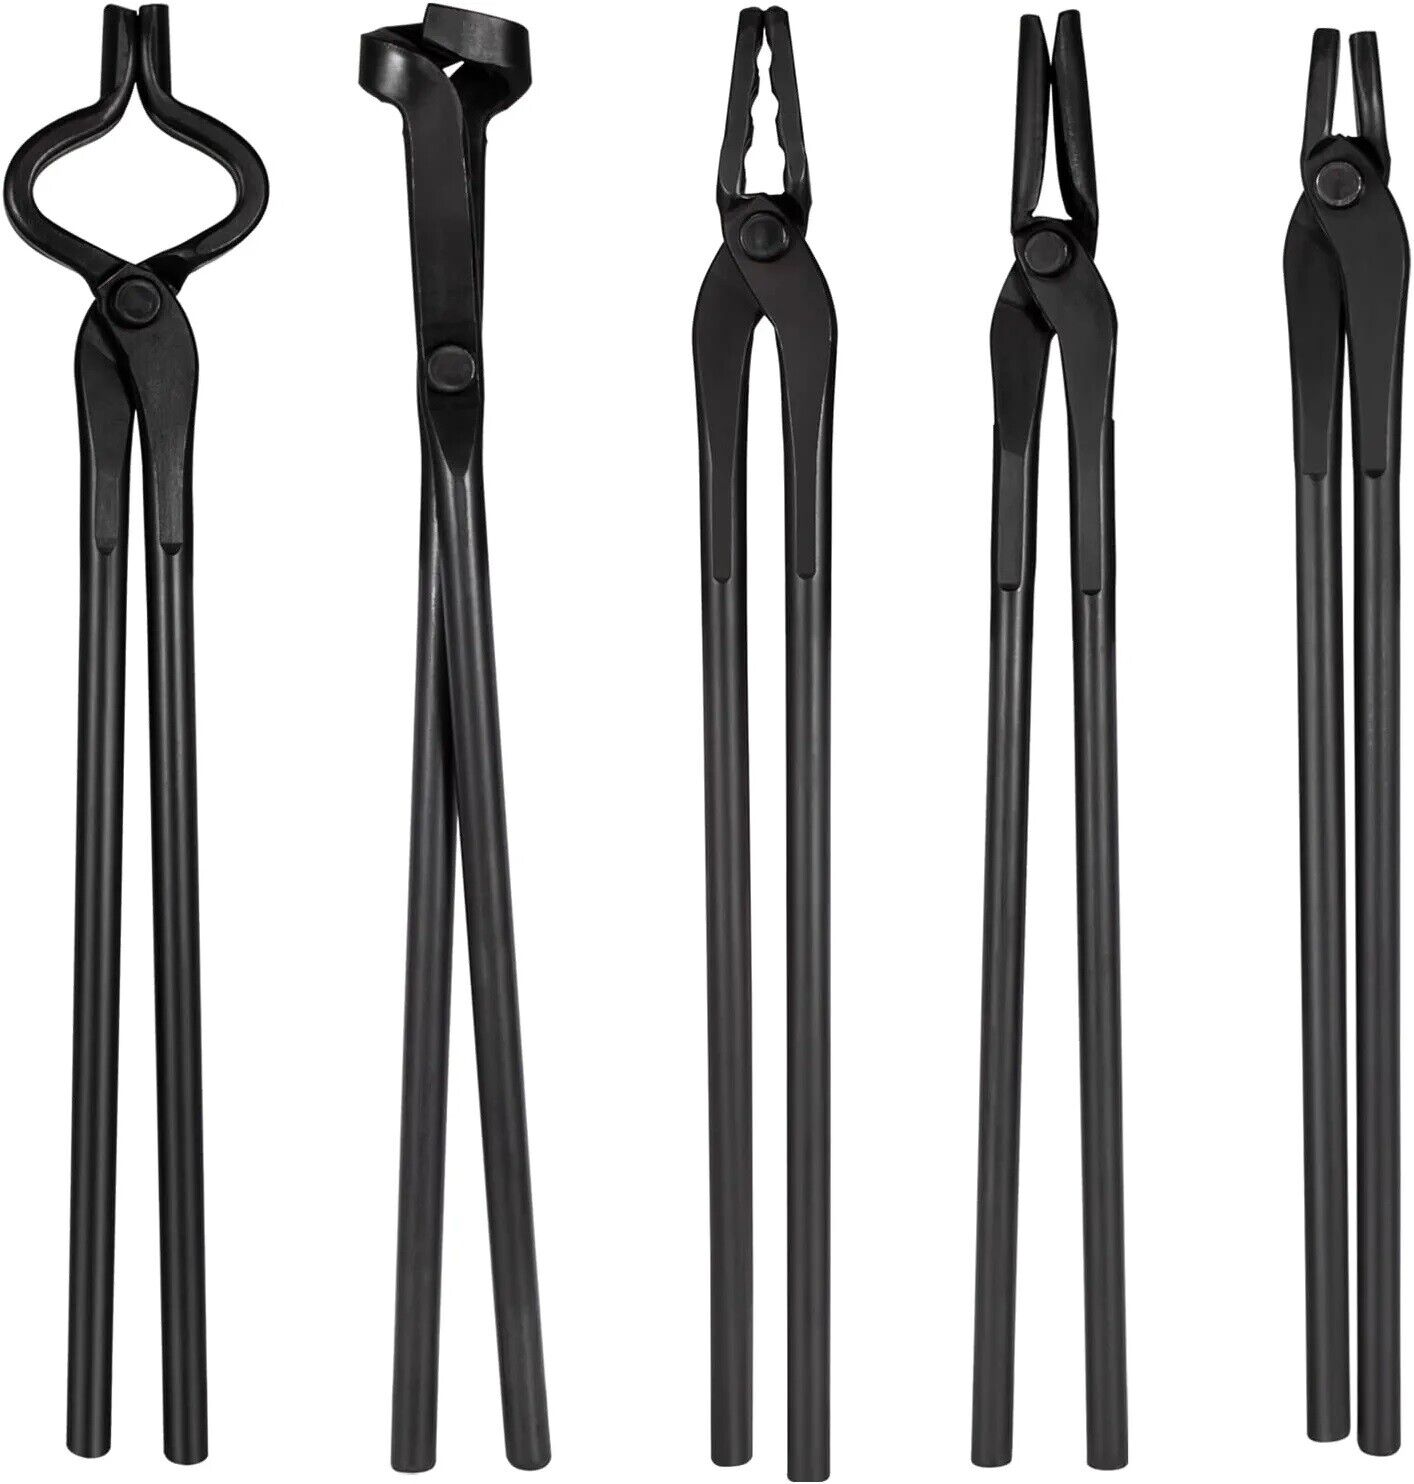 Blacksmith Tongs Tools Set For Knife Making, Anvil, Forge Kit , Flat Tongs